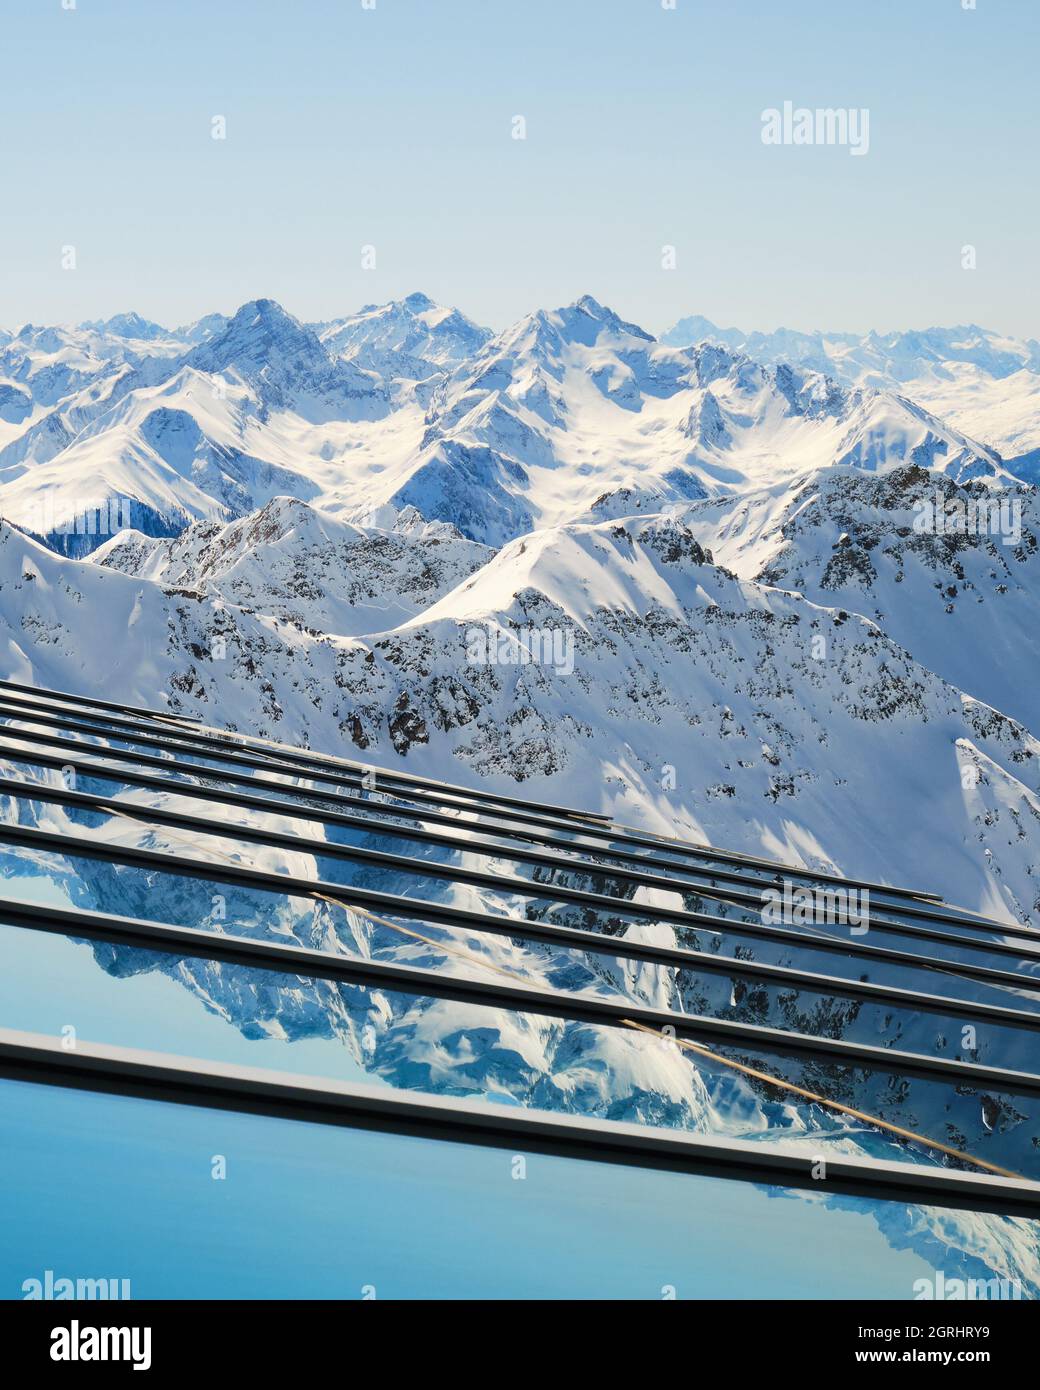 Capas de picos montañosos reflejados en el cristal - vista desde la estación de cable superior de Parpaner Rothorn en la localidad de Arosa Lenzerheide, Suiza. Vertical. Foto de stock